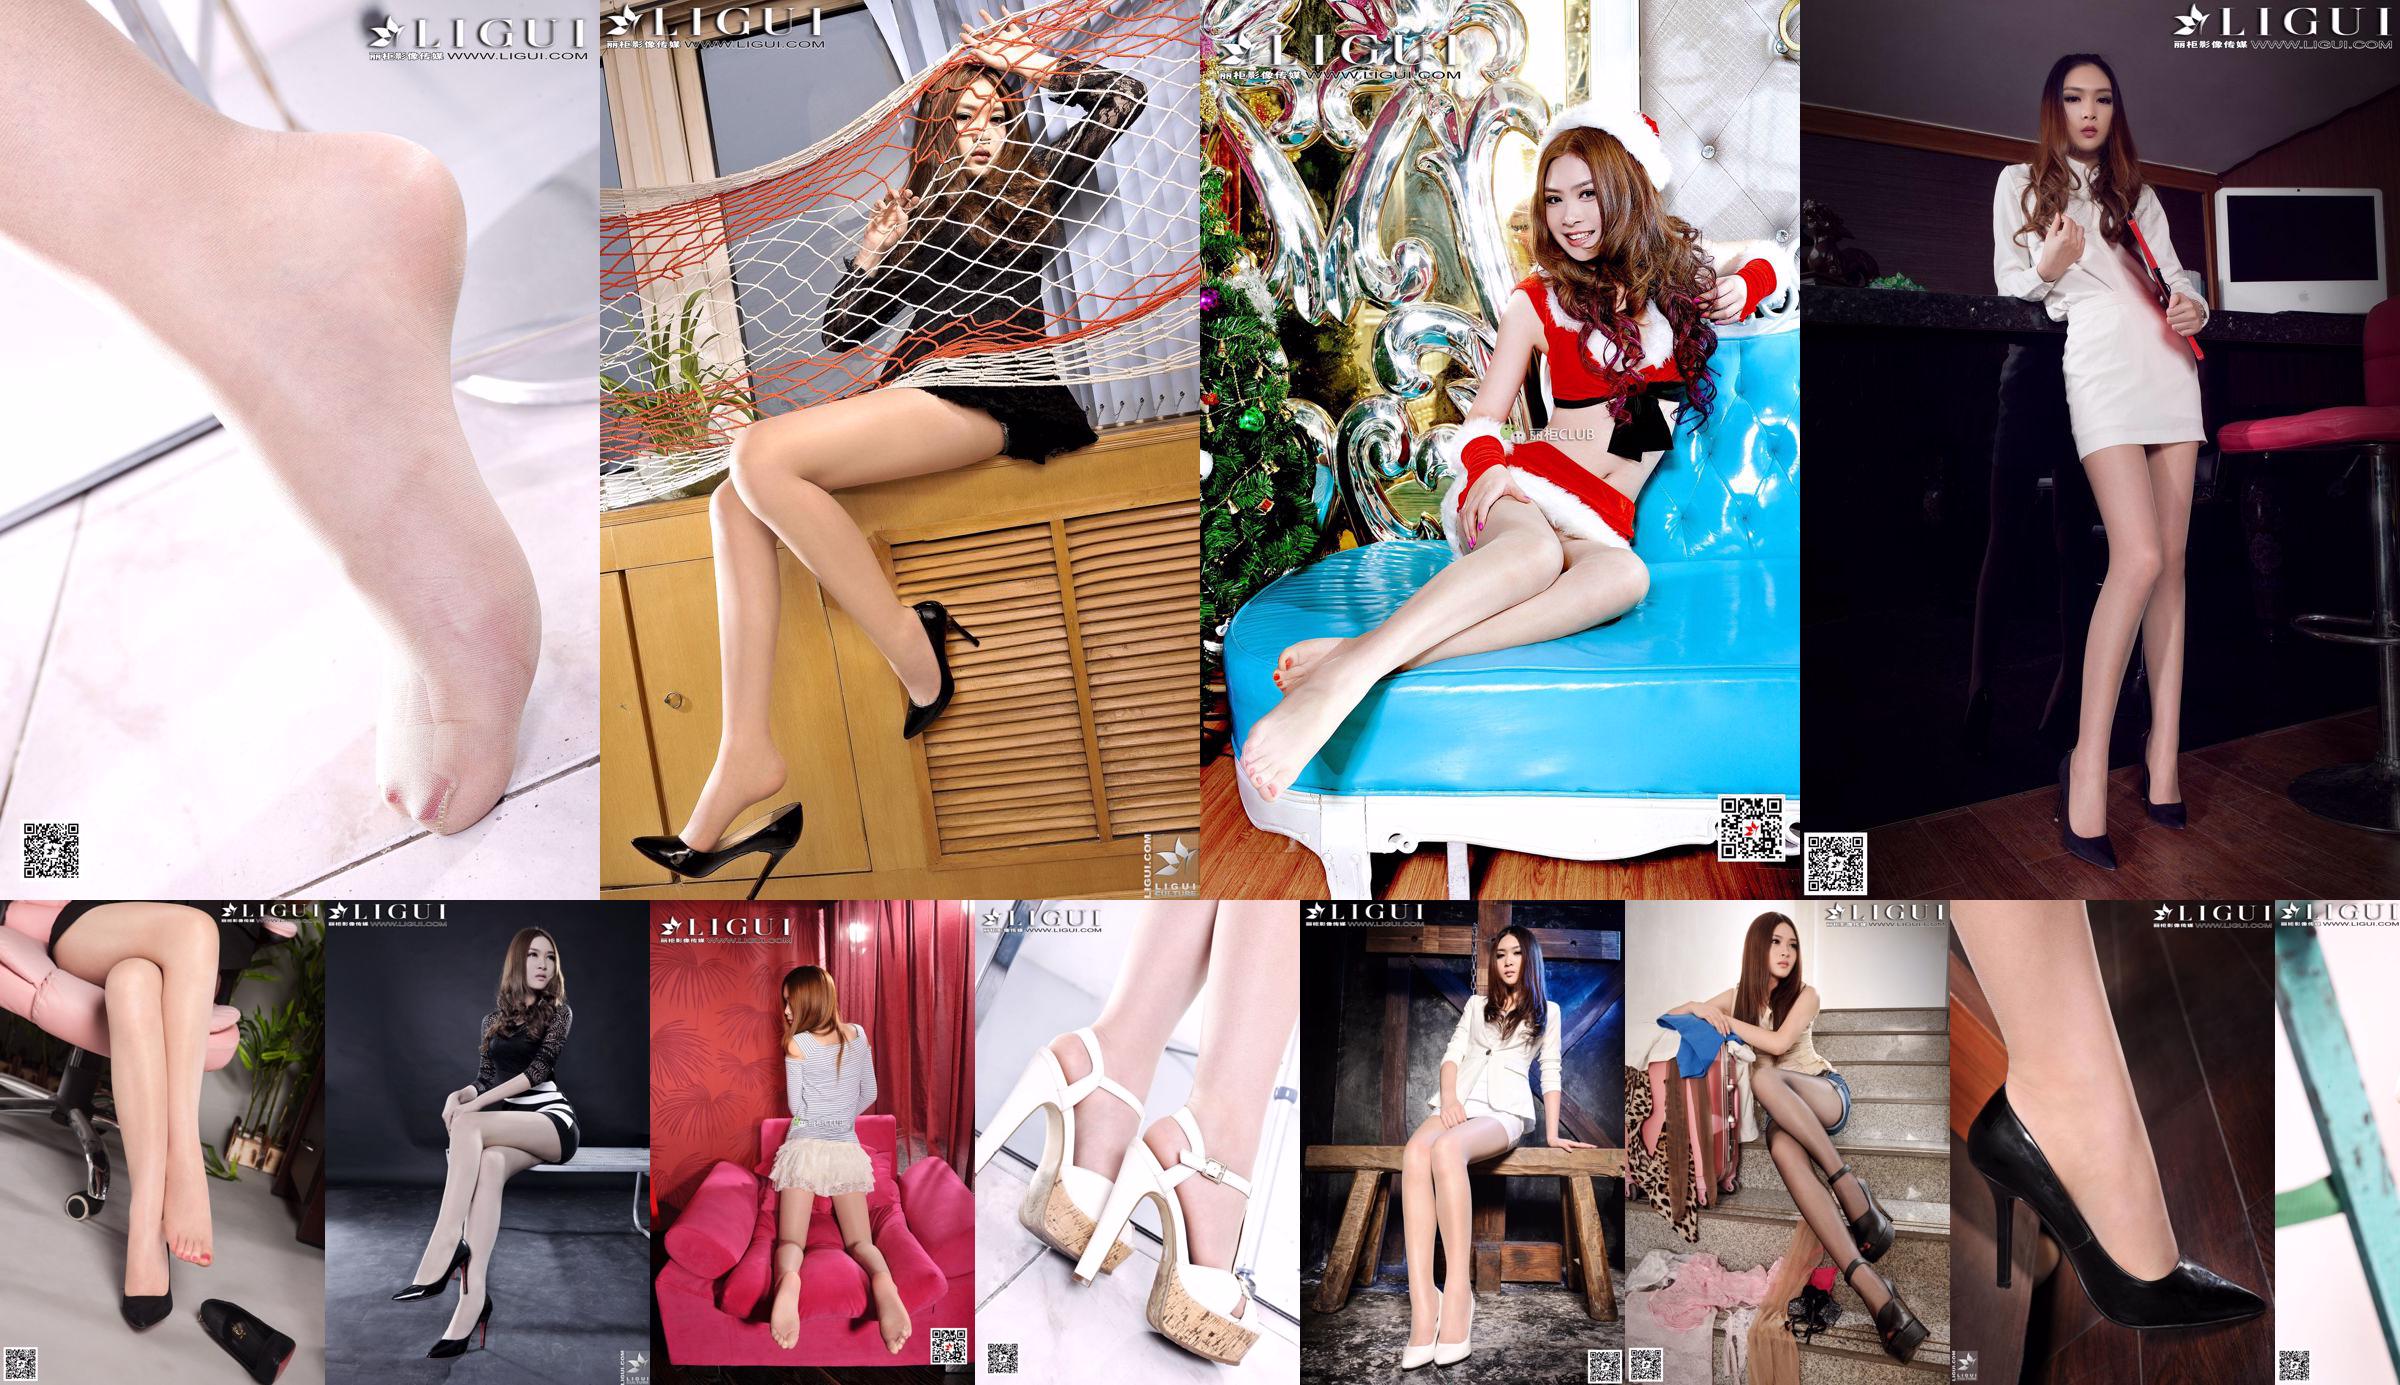 [丽 柜 贵 足 LiGui] Model Yoonas "OL Professional Wear Seidenfuß High Heels" Vollständige Sammlung von schönen Beinen und Jadefüßen No.47b27e Seite 1